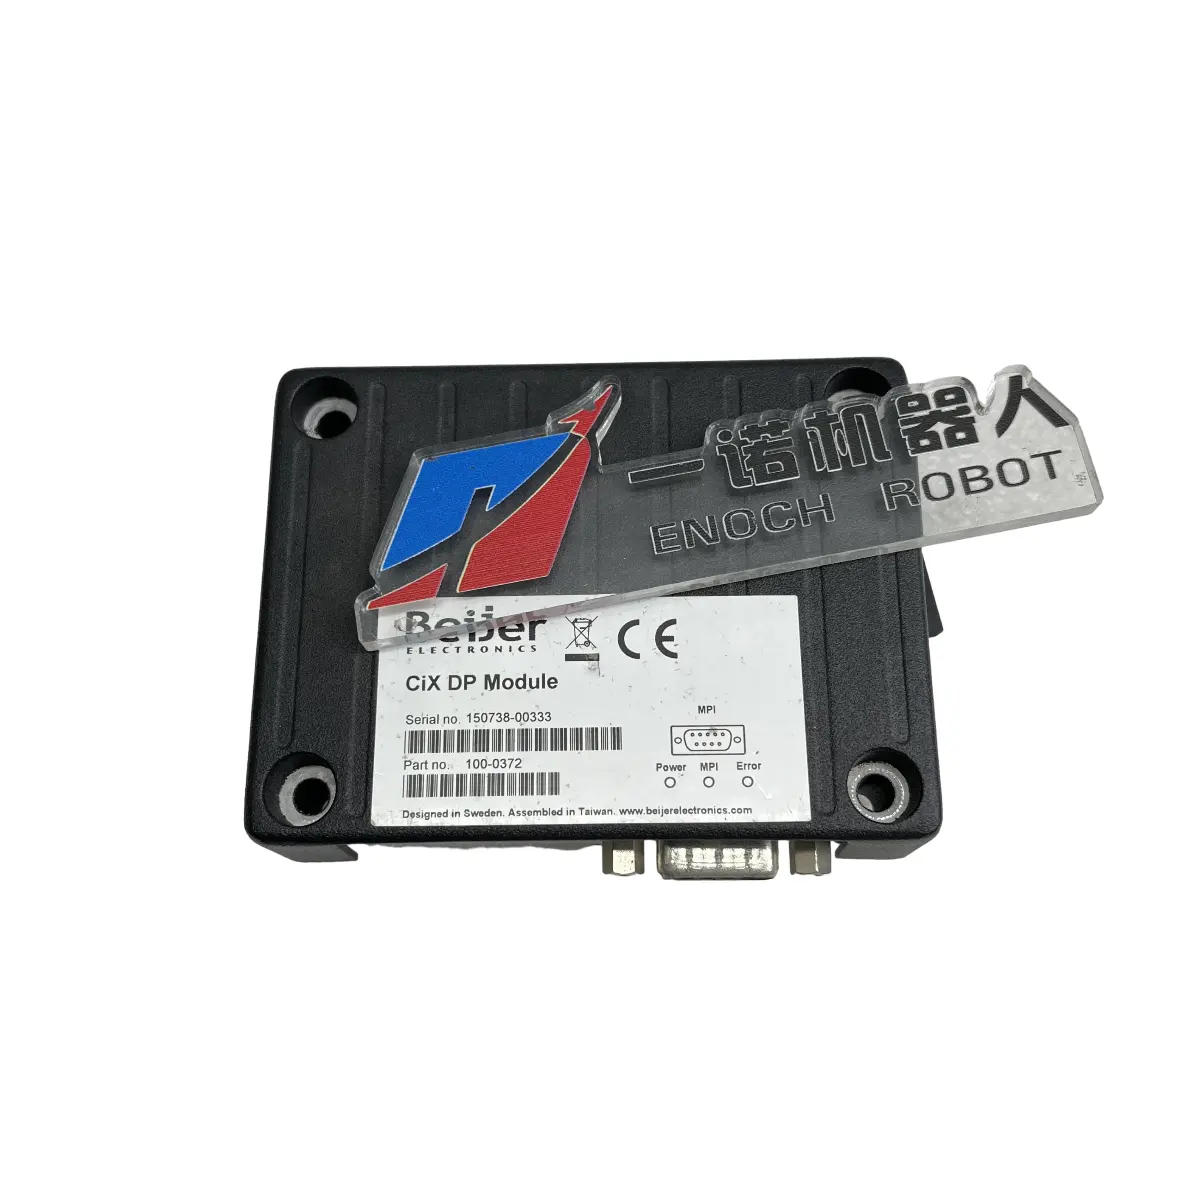 بطاقة الاتصالات CIX DP MODULE مستعملة متوفرة في المخزون بطاقة الاتصالات ملونة جميلة وظيفية بالكامل CIX DP MODULE 100-0372